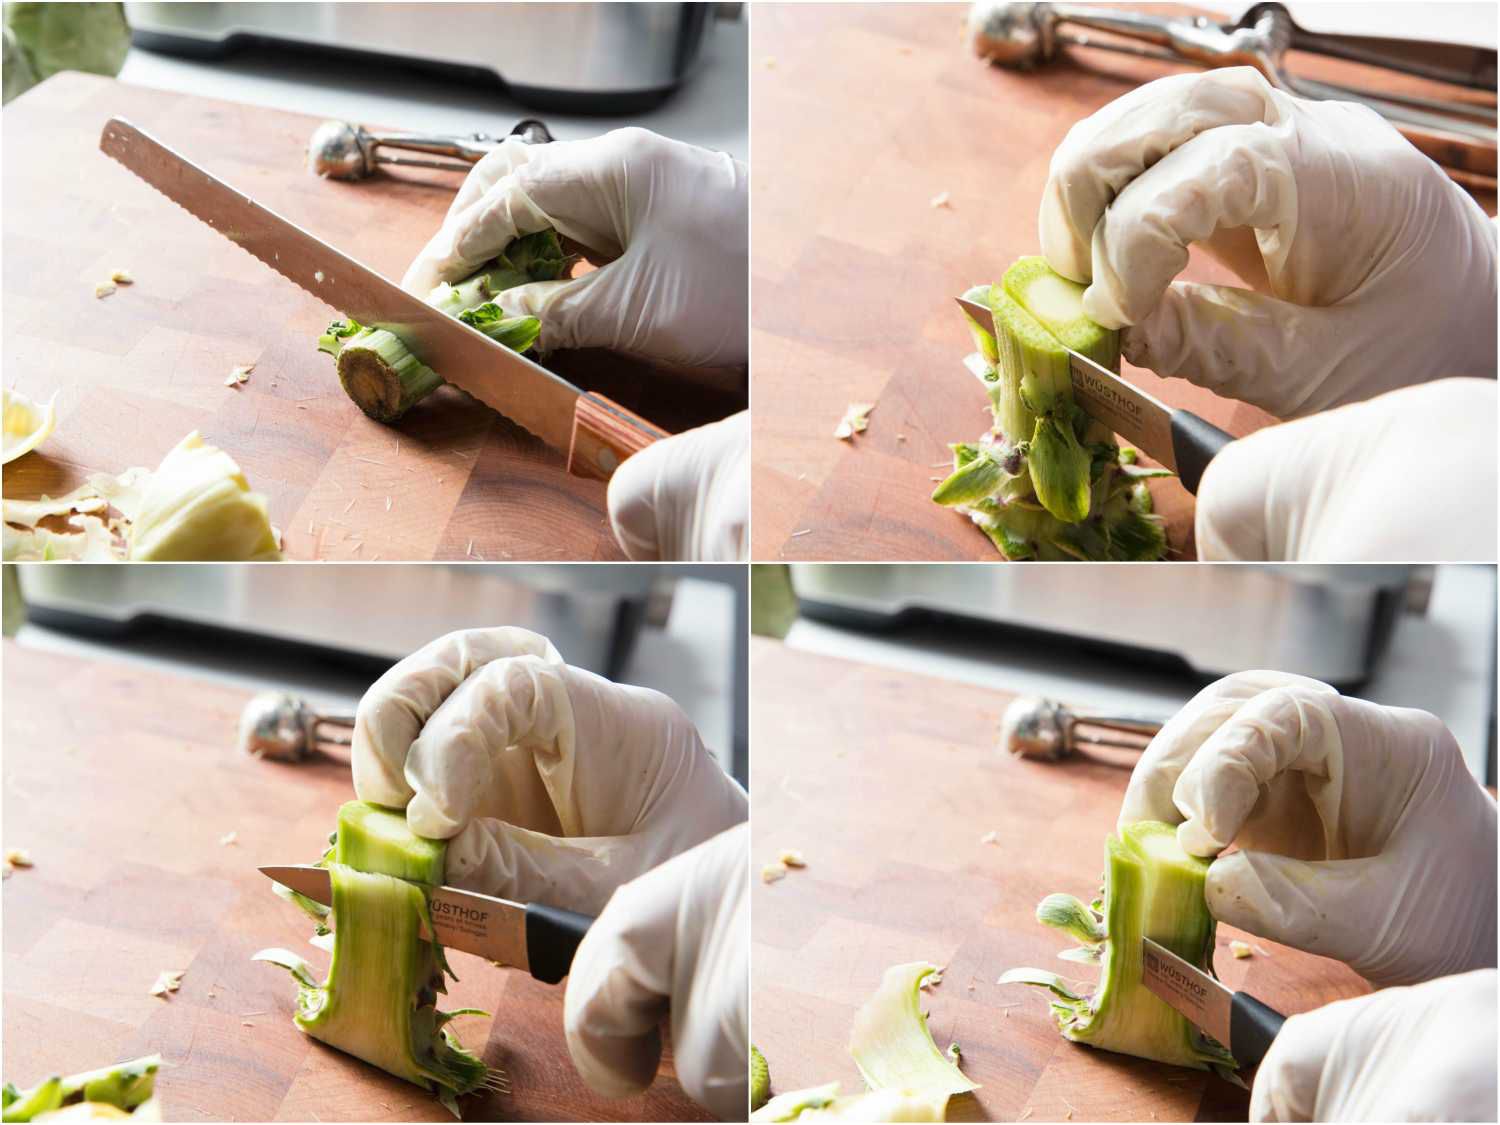 修剪洋蓟茎的拼贴画:用锯齿刀切掉末端，用削皮刀切掉坚硬的外部